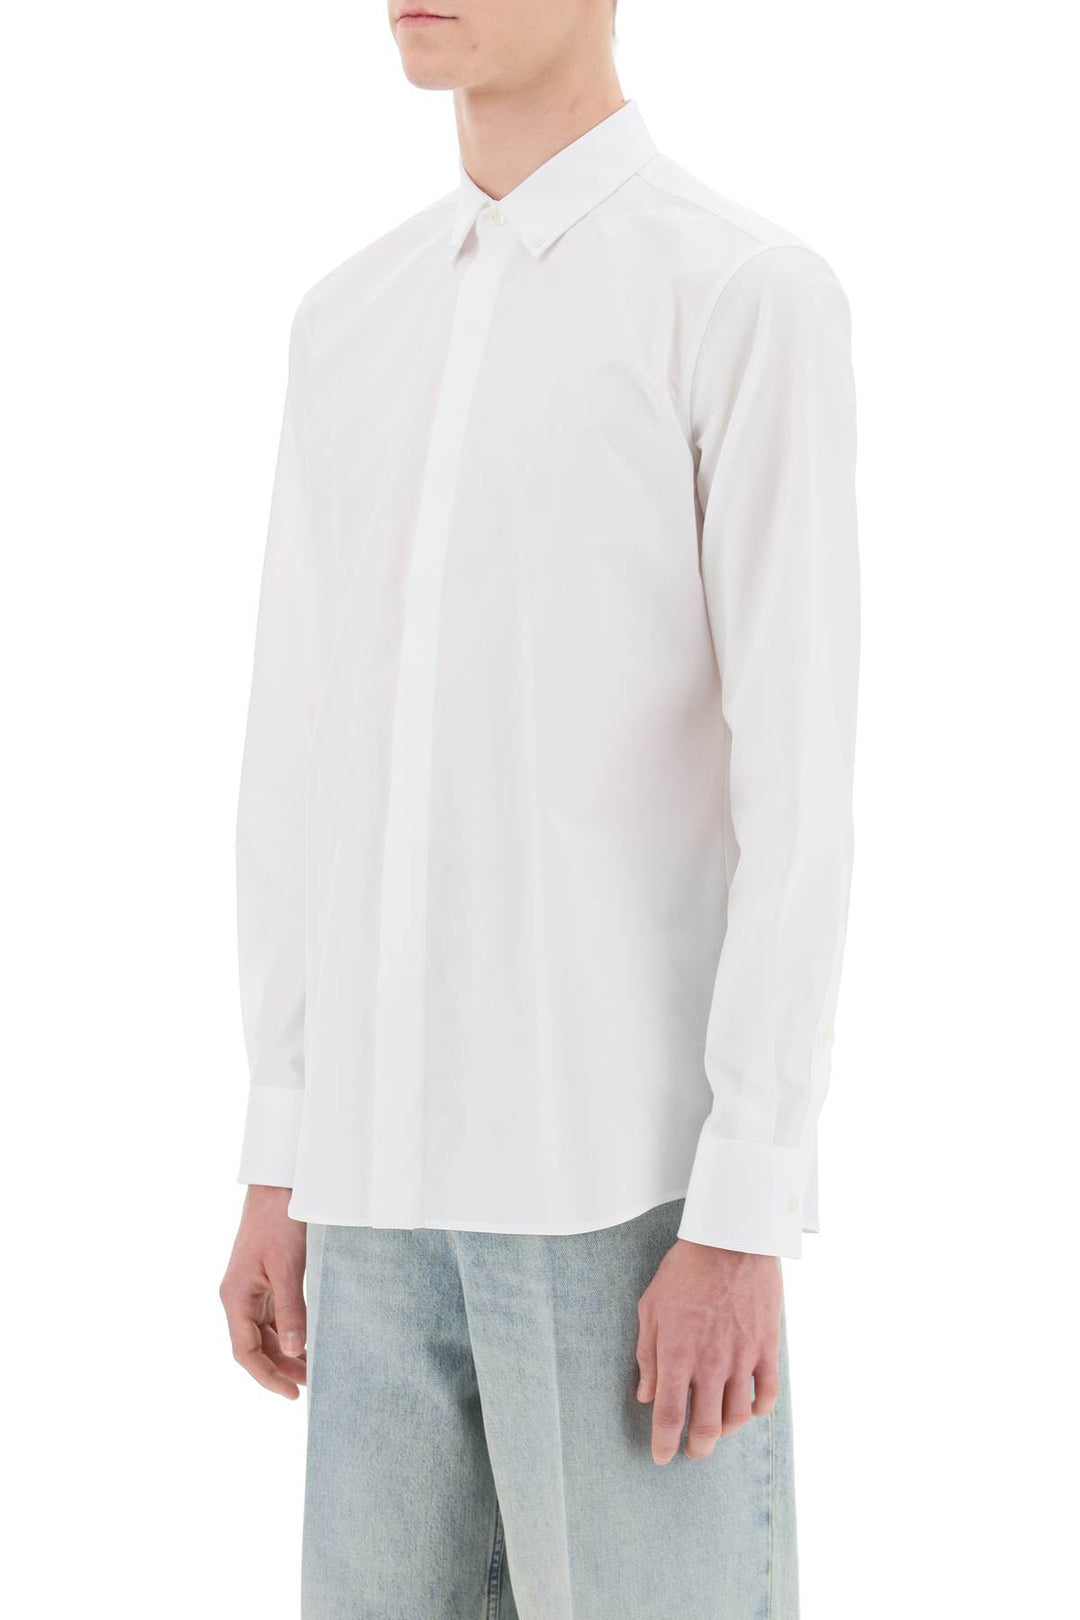 Valentino Garavani Rockstud Unlimited Slim Fit Shirt   Bianco